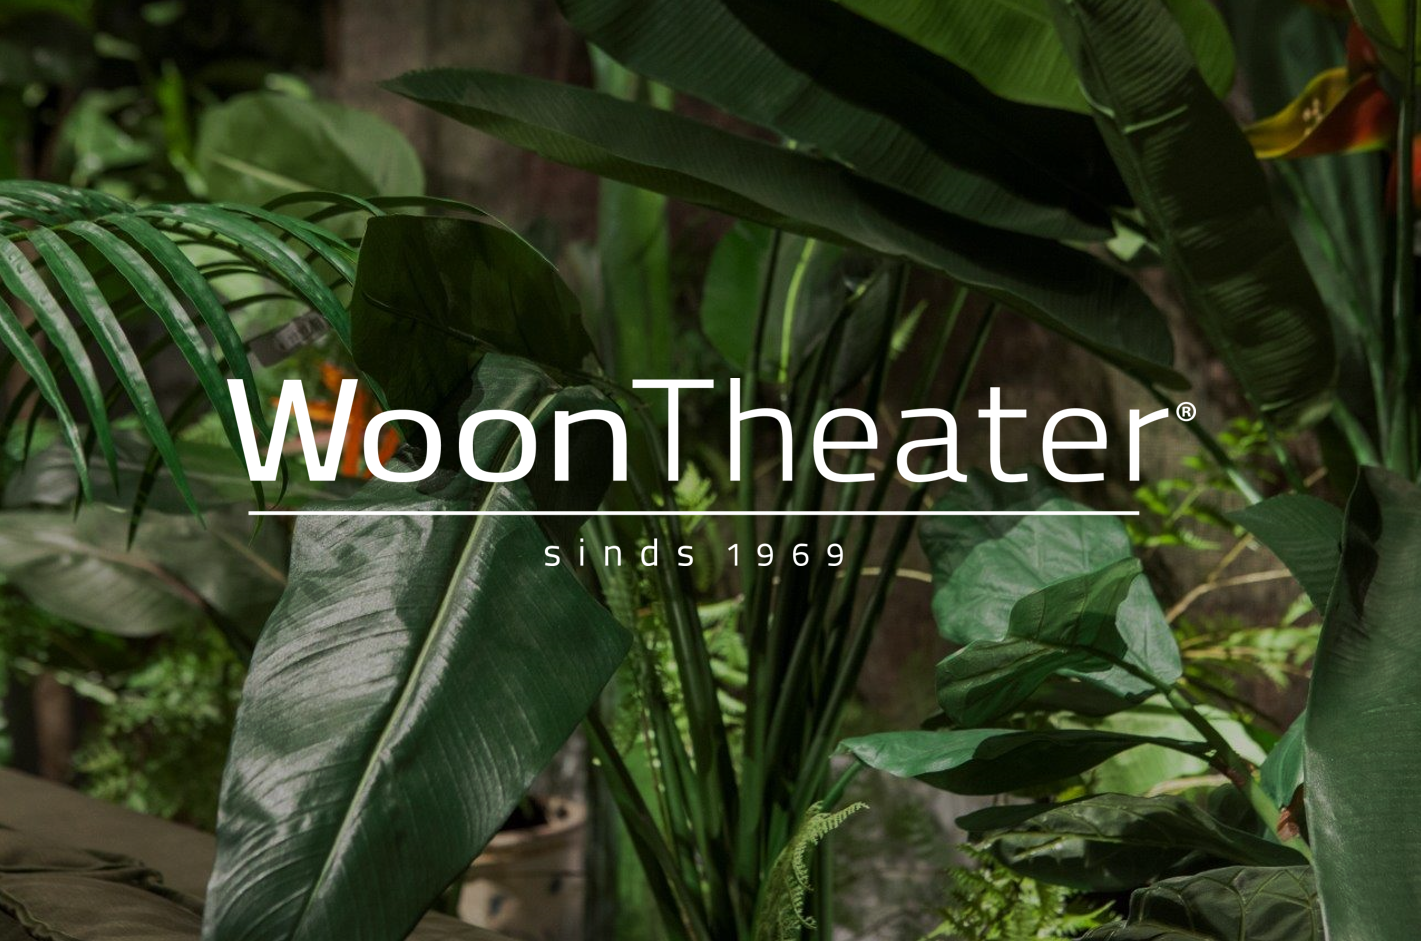 WoonTheater | Luxe & Wereldse interieurs sinds 1969